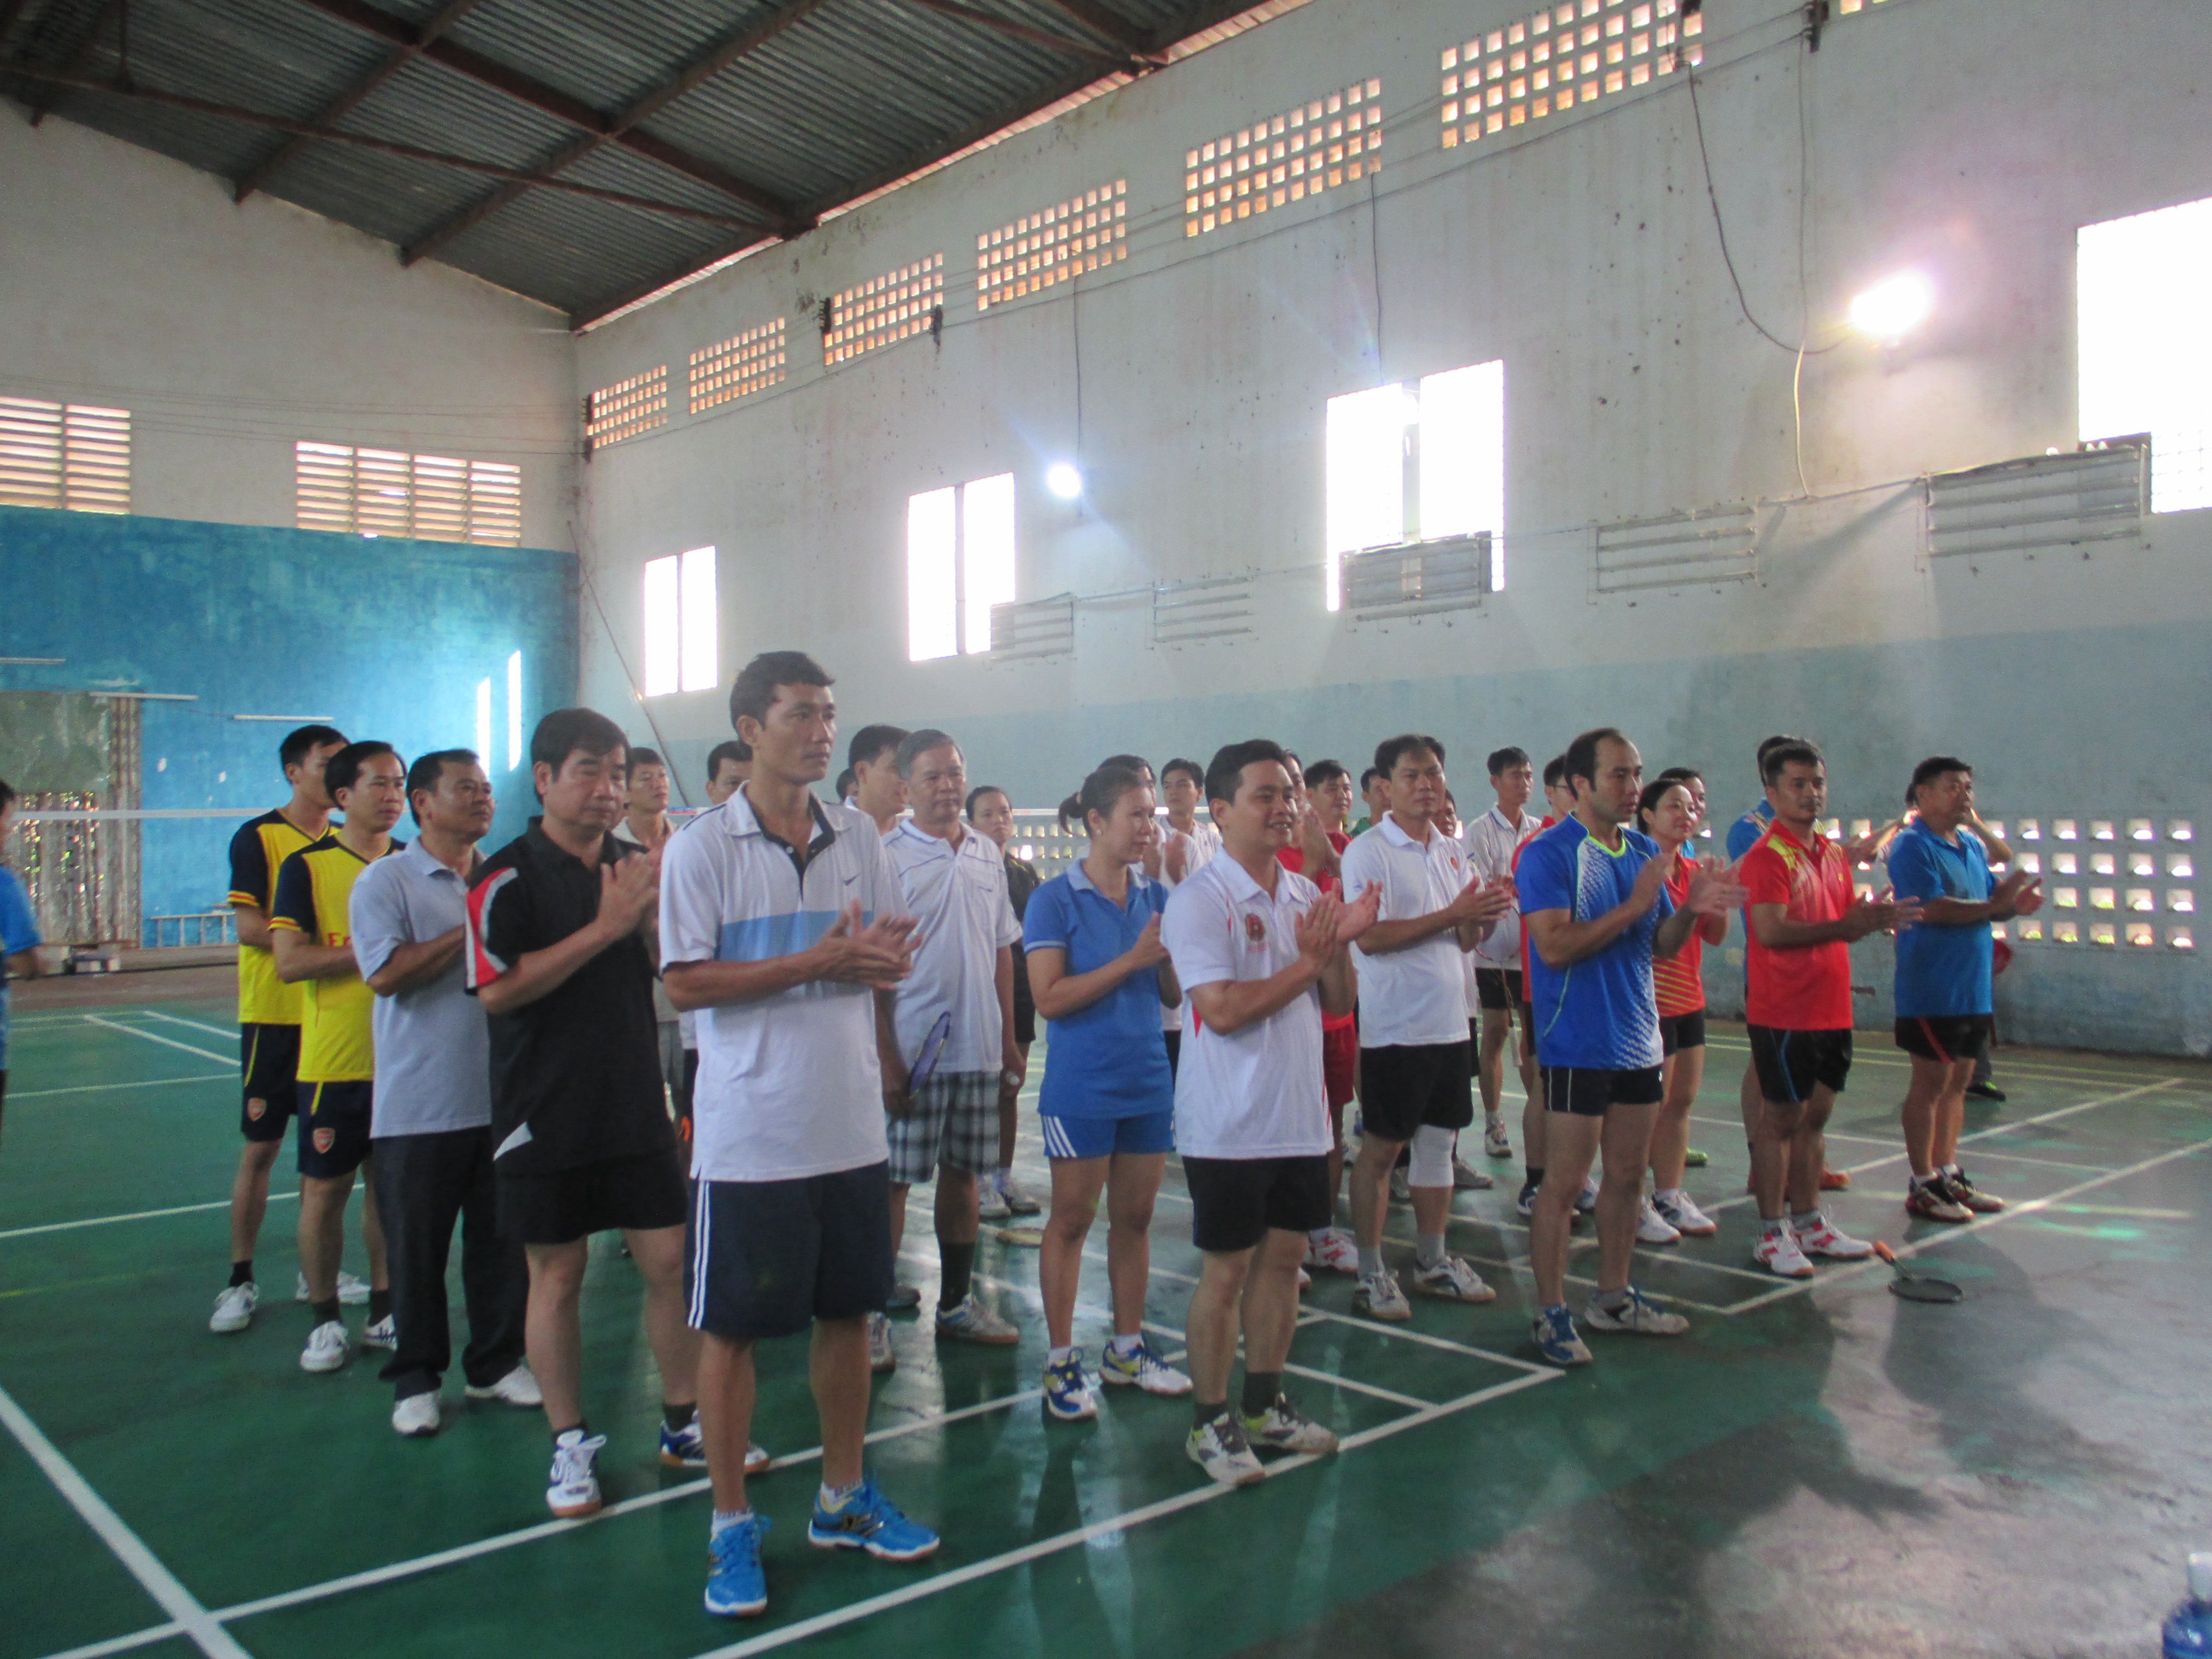 Chào mừng kỷ niệm 180 năm Tây Ninh hình thành và phát triển, Cục Thi hành án dân sự tỉnh Tây Ninh -  Khối trưởng Khối thi đua Nội chính đã tổ chức giải thi đấu cầu lông các cơ quan Khối Nội chính năm 2016